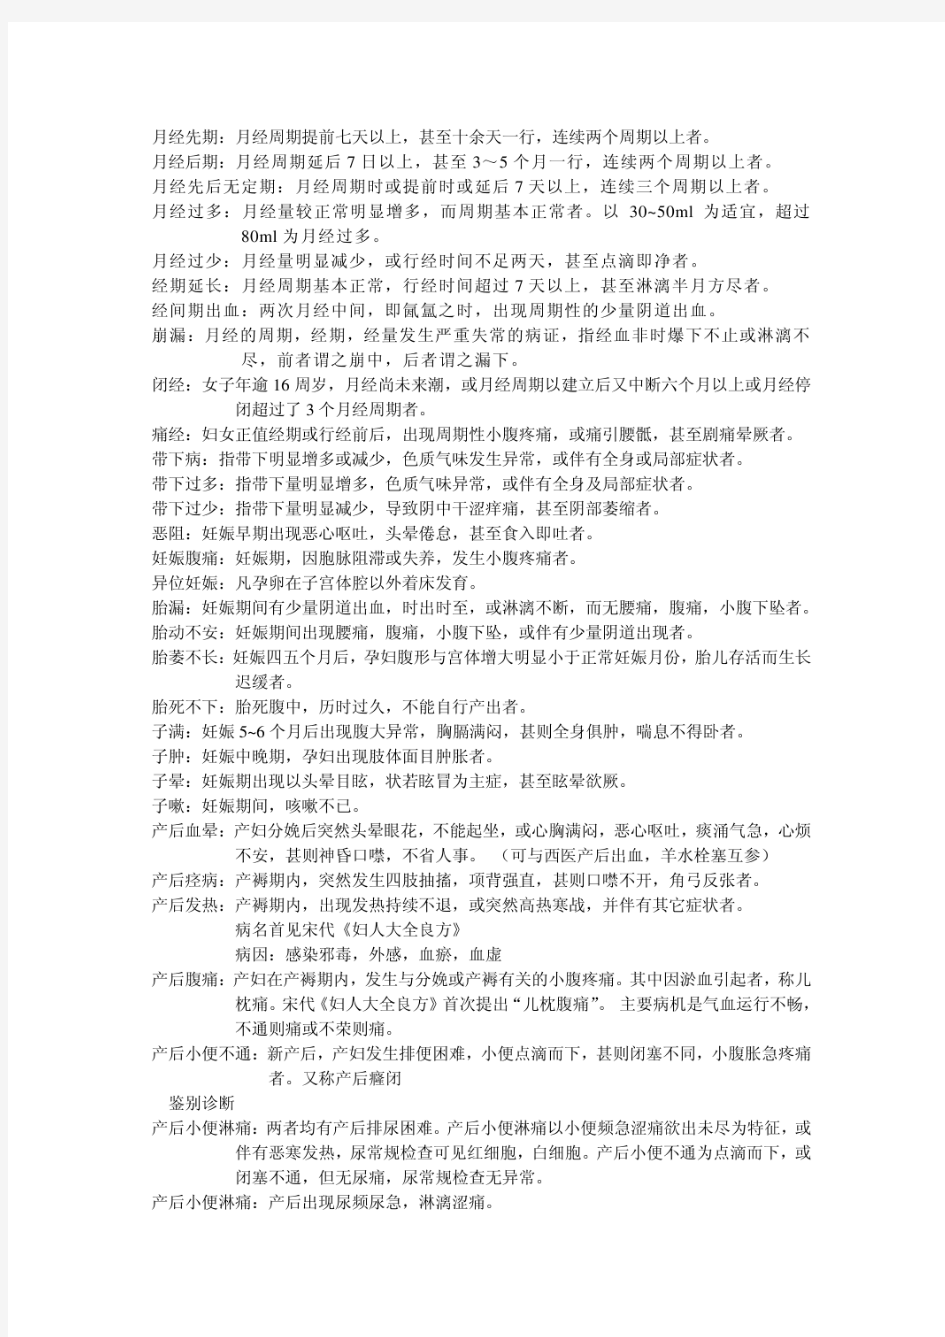 中医妇科学笔记 - 道客巴巴.pdf